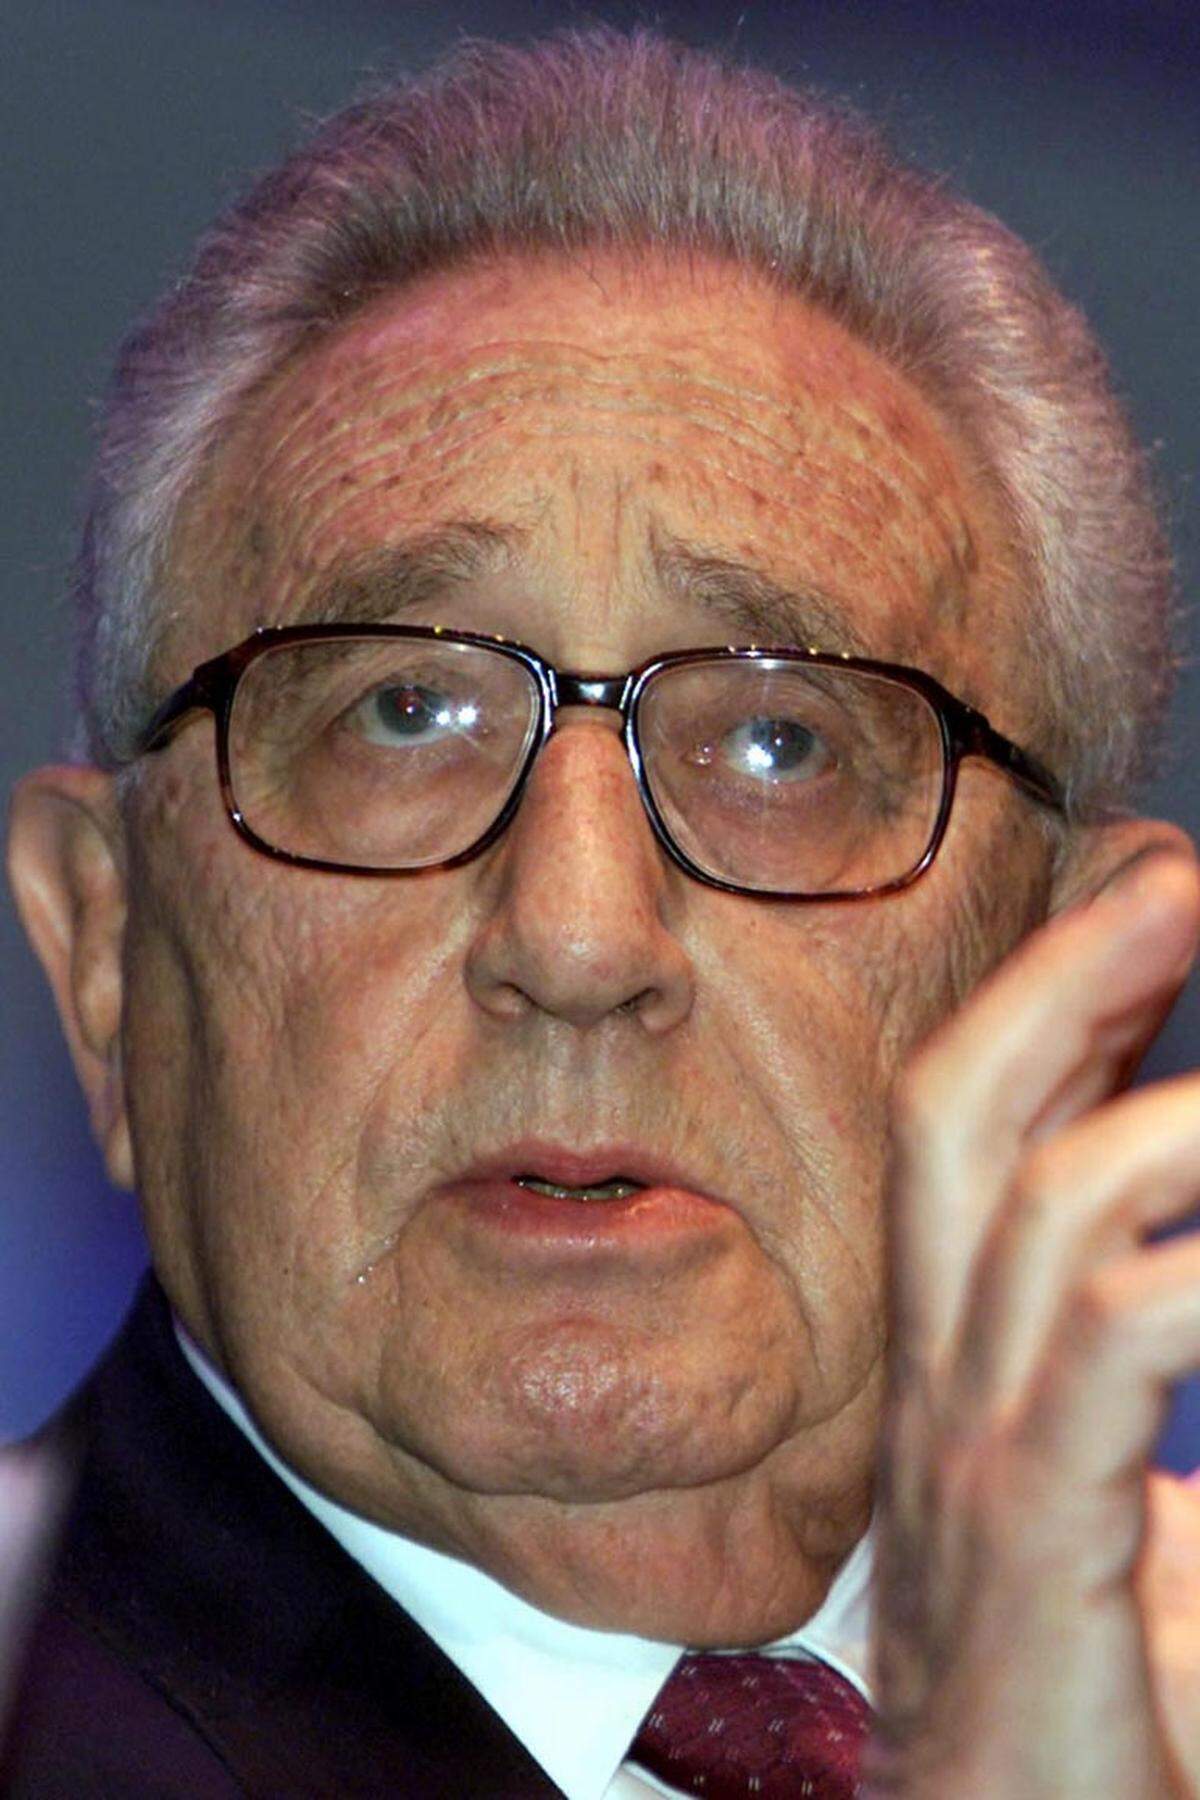 "Henry" wurde unter dem Namen Heinz Alfred Kissinger am 27. Mai 1923 als Sohn eines jüdischen Lehrers in Fürth (Bayern) geboren. Er flüchtete 1938 mit seinen Eltern vor den Nazis in die USA. Dort machte der Hochbegabte nach einem Studium an der Harvard-Universität schnell politisch Karriere.